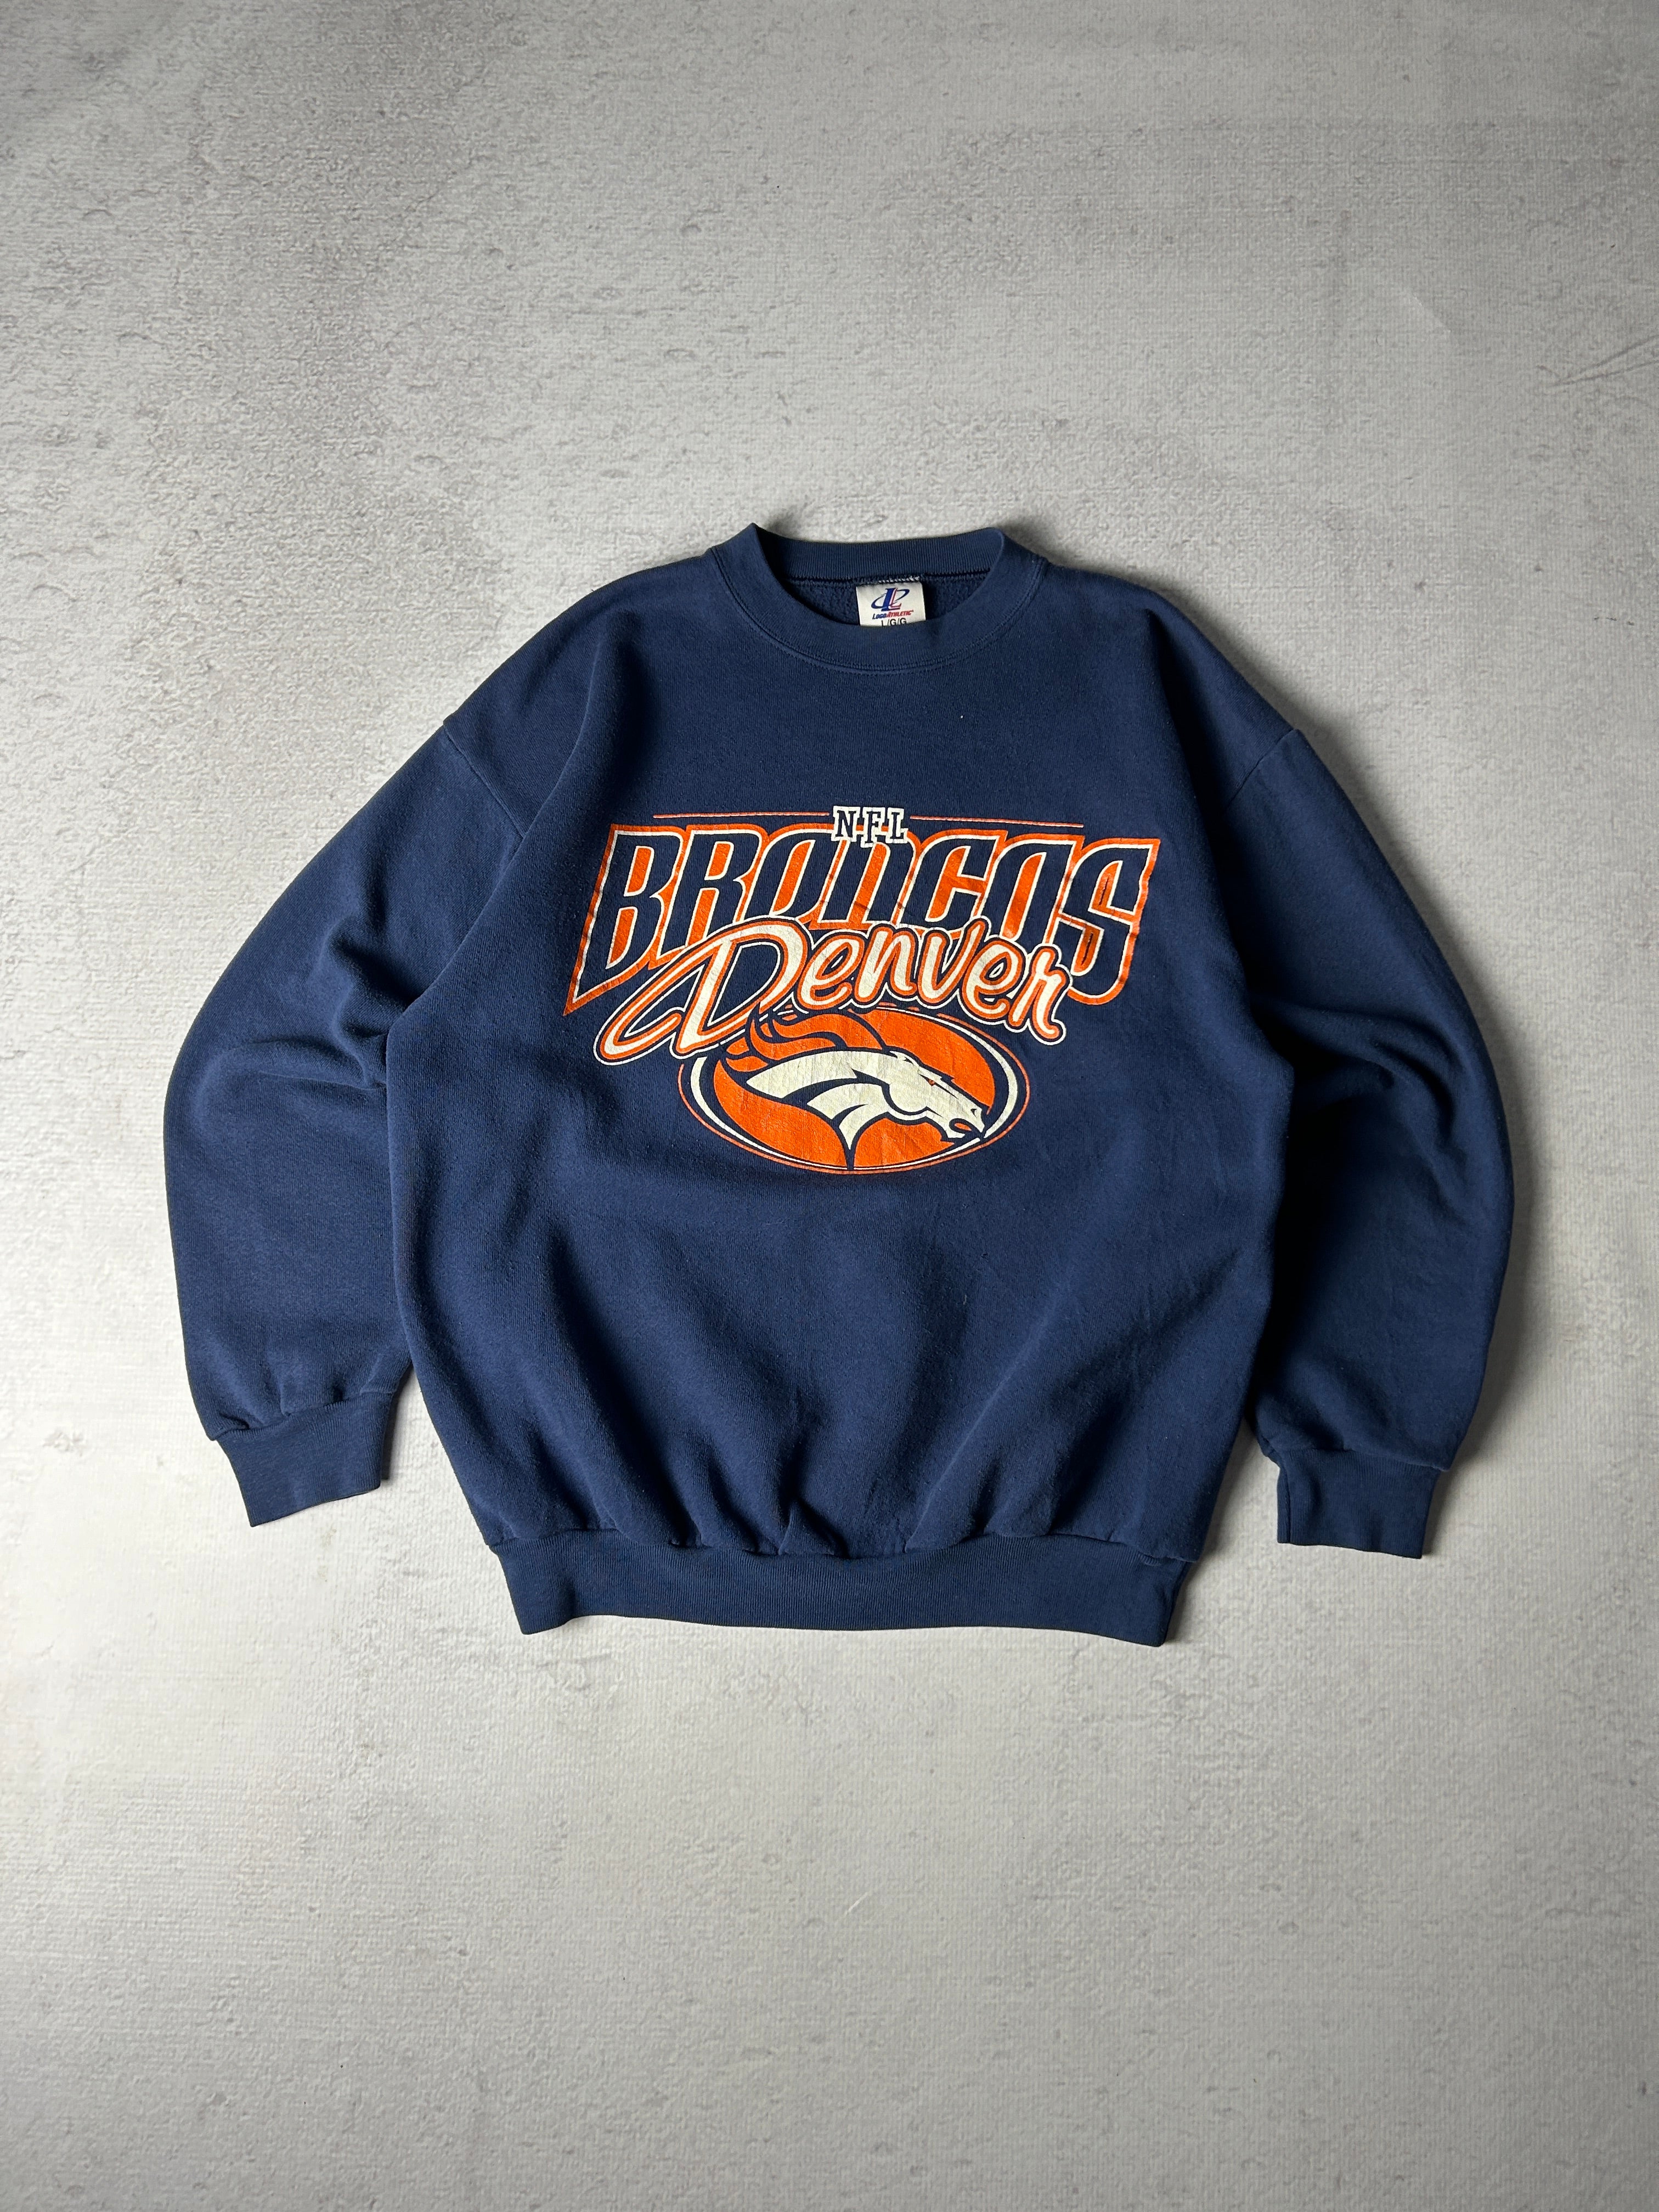 Vintage NFL Denver Broncos Crewneck Sweatshirt - Men's Large